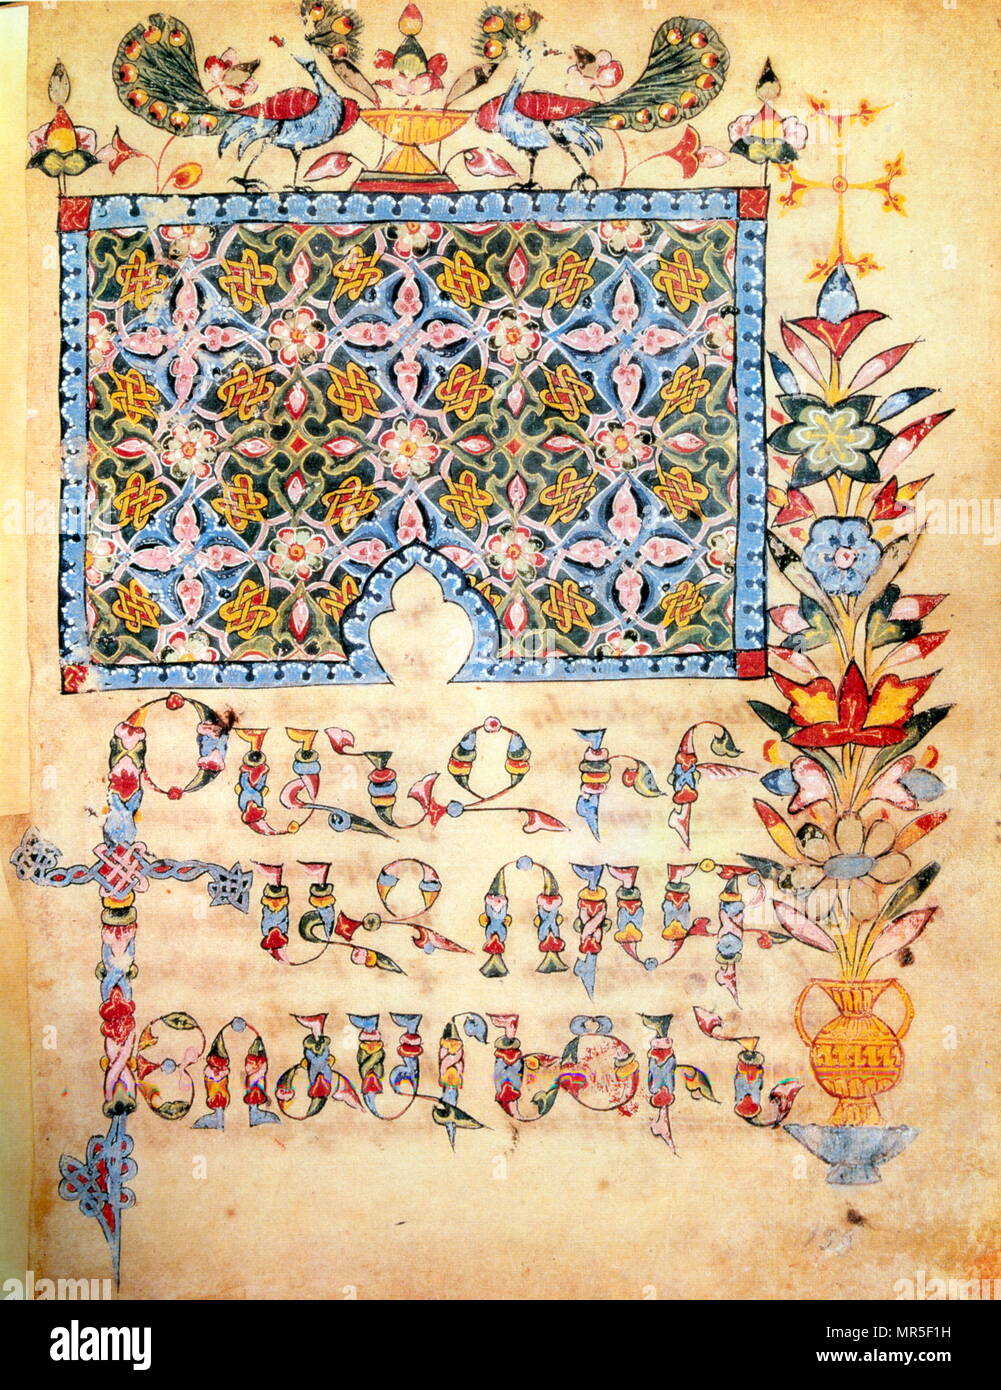 Manuscrit illustré chrétienne arménienne montrant l'Évangile de saint Luc ; 14e siècle Banque D'Images